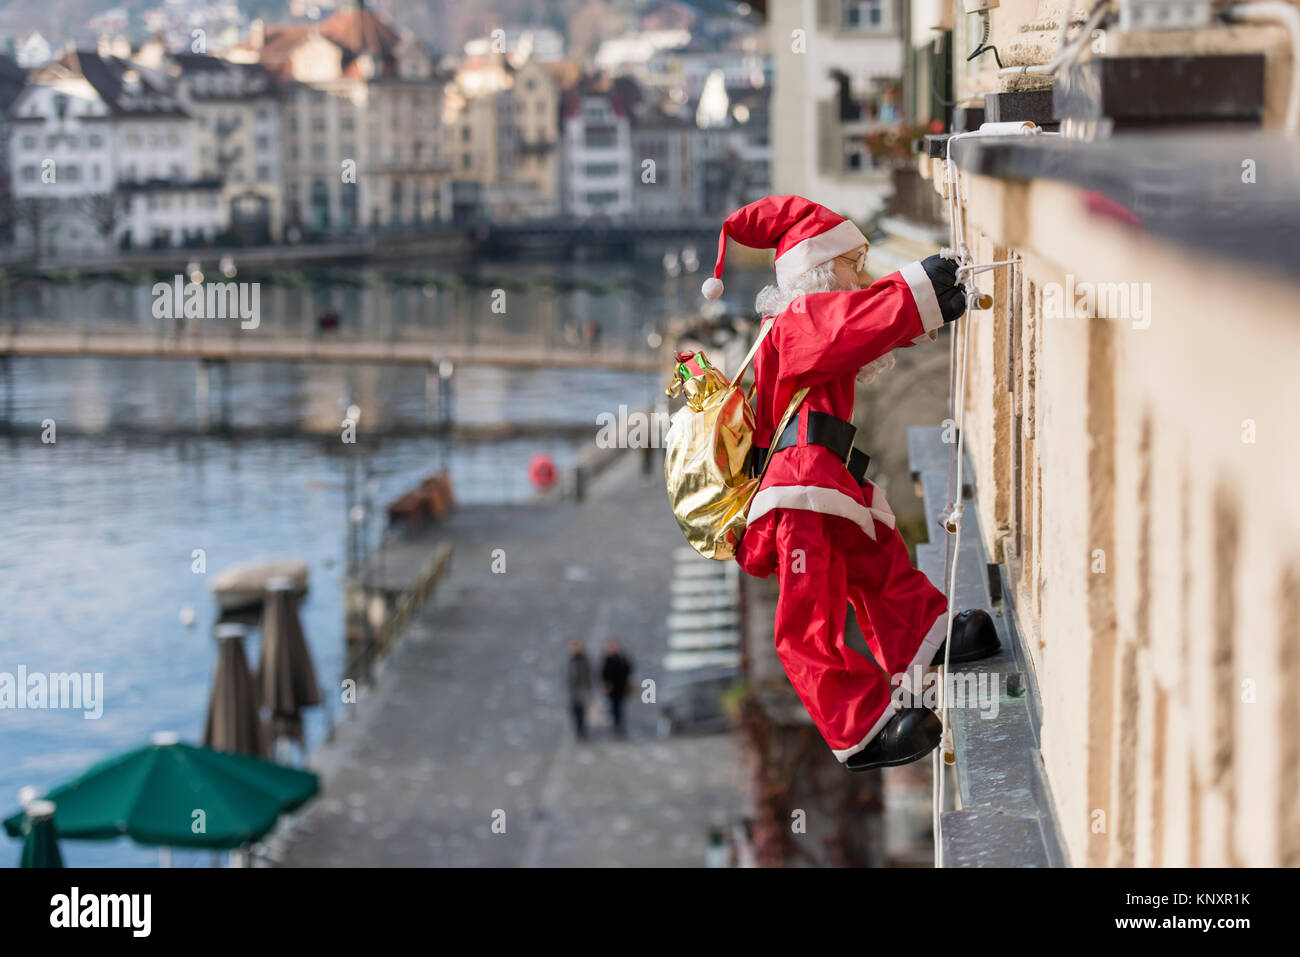 Luzern, Schweiz - 3 Dec 2017: als Weihnachtsschmuck, ein Weihnachtsmann  Marionette mit Weihnachtsgeschenke klettert die Fassade eines Hauses in  Luce Stockfotografie - Alamy